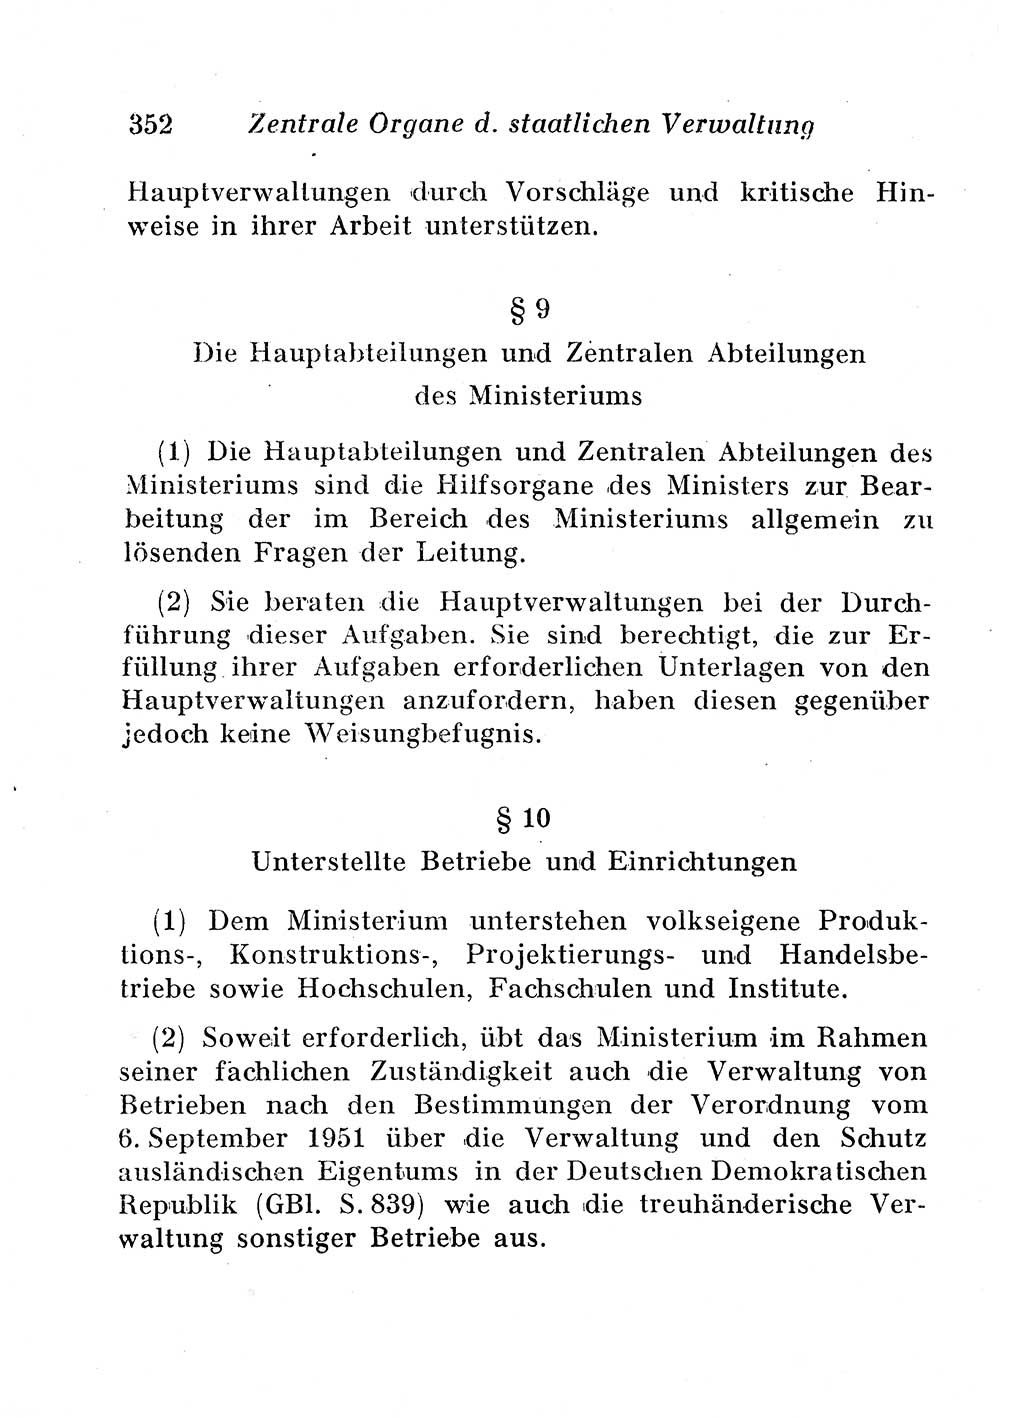 Staats- und verwaltungsrechtliche Gesetze der Deutschen Demokratischen Republik (DDR) 1958, Seite 352 (StVerwR Ges. DDR 1958, S. 352)